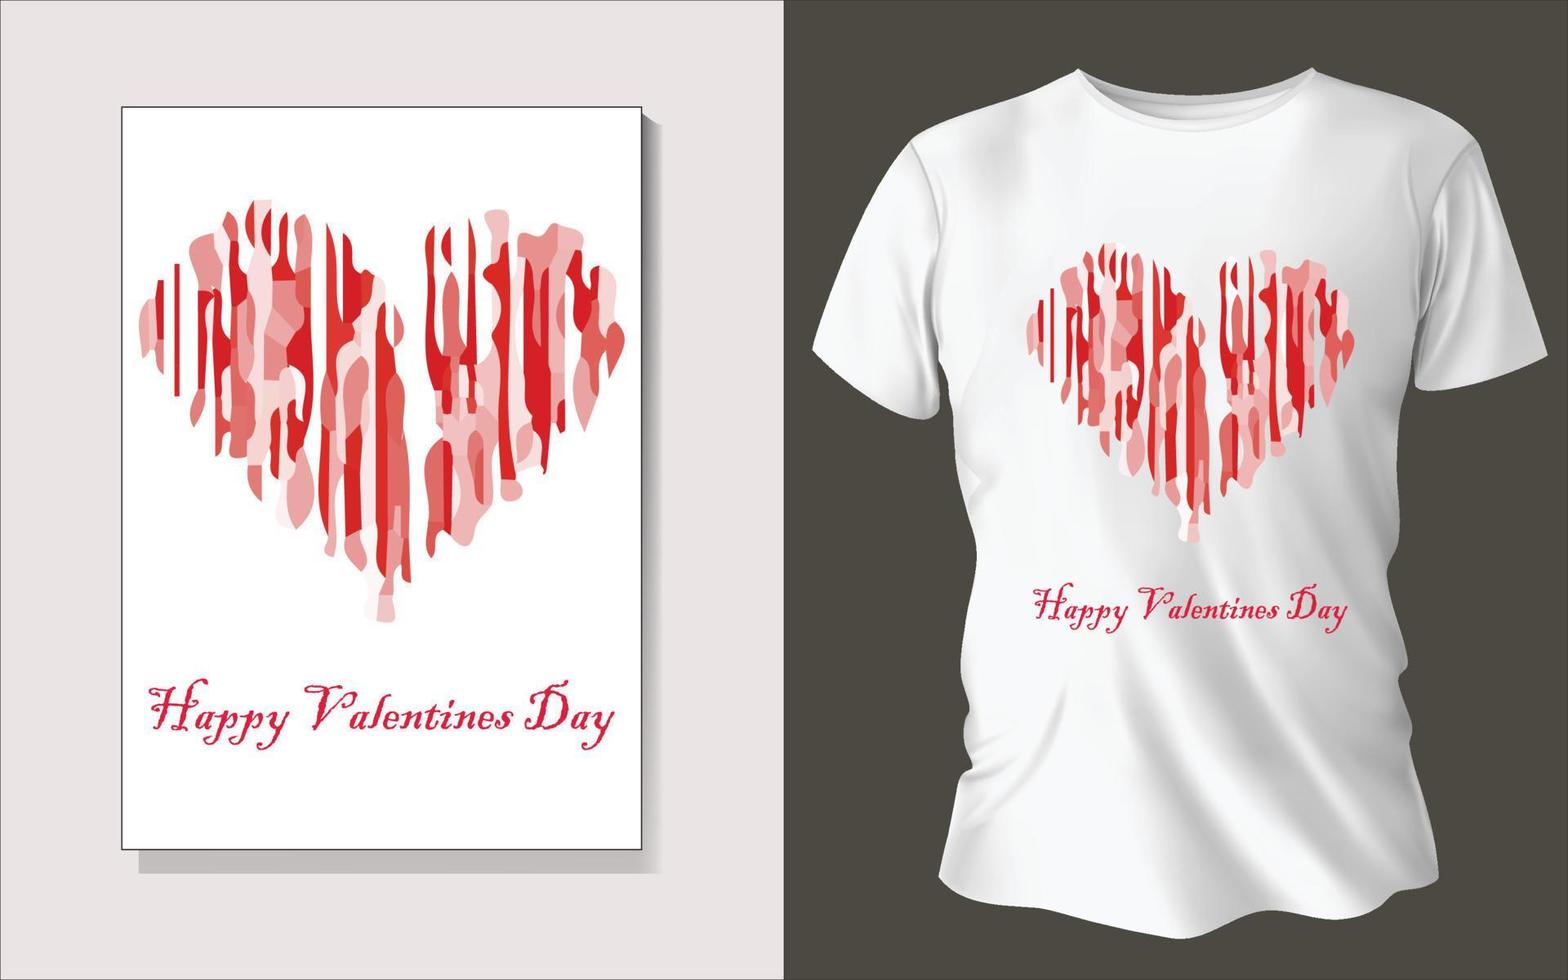 Valentinstag spezielles T-Shirt-Design vektor